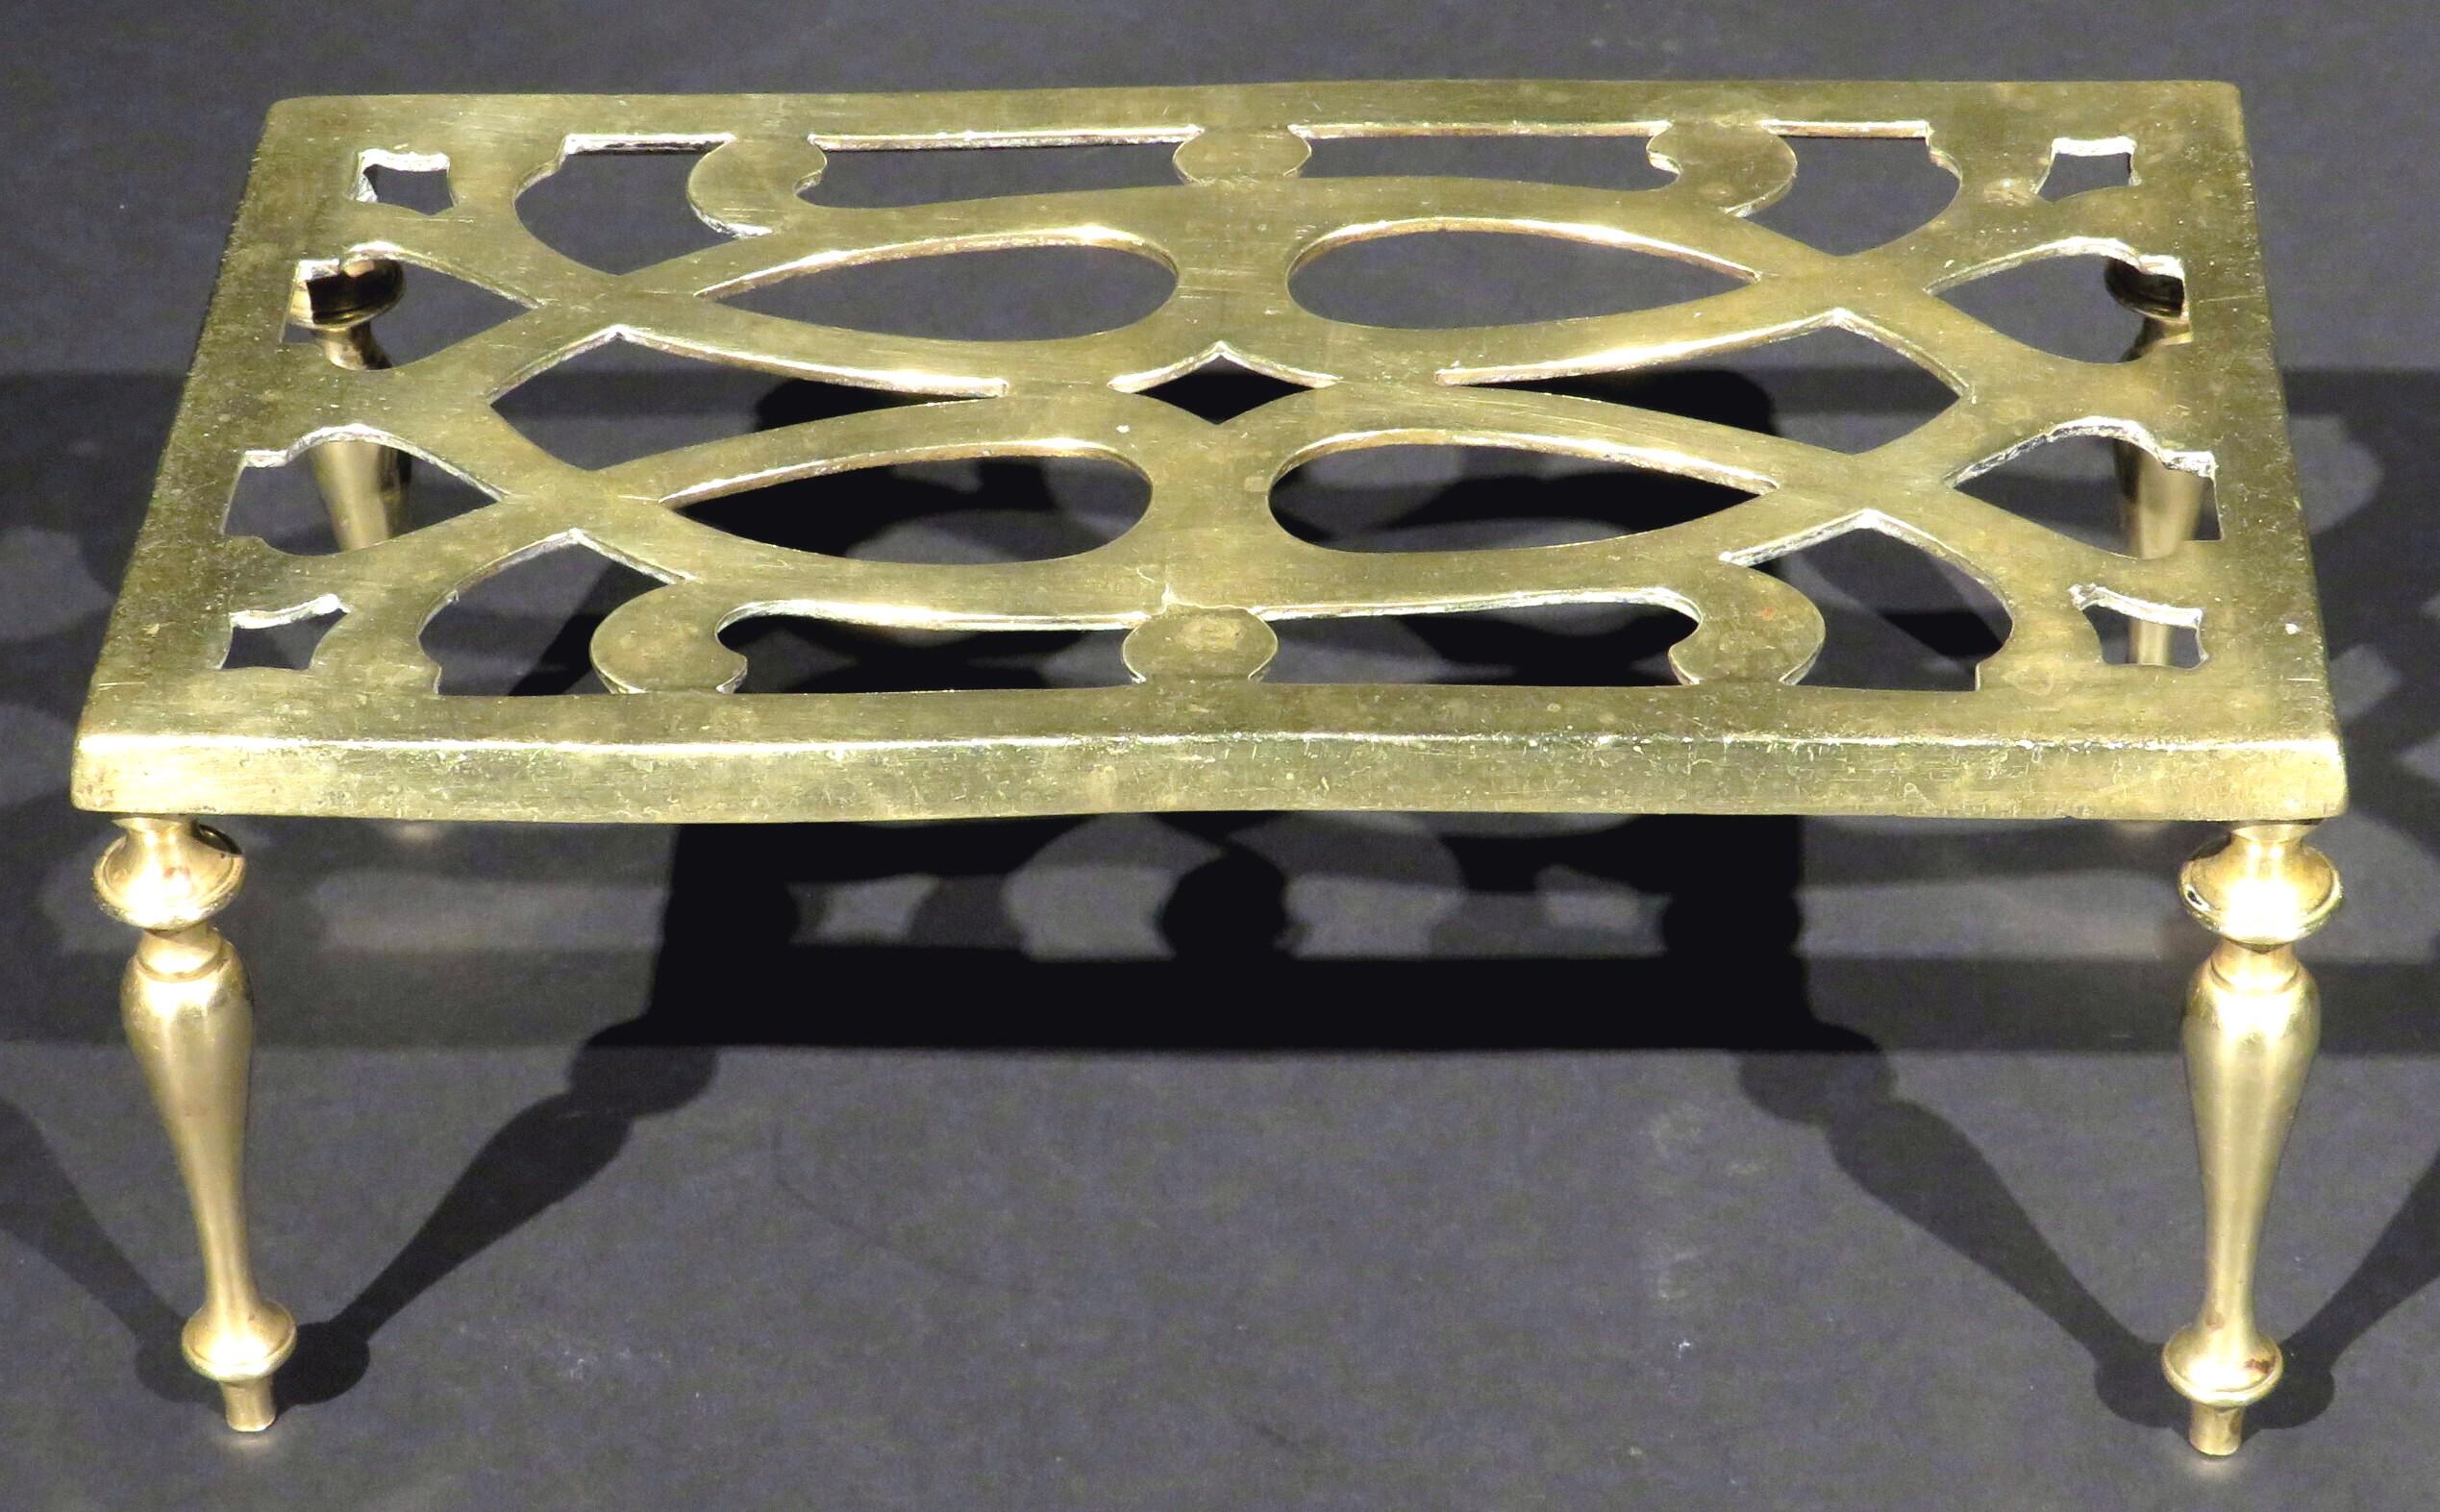 Le plateau rectangulaire percé repose sur quatre supports tournés en forme de balustre, le dessous présentant des marques d'enregistrement britanniques imprimées.
  